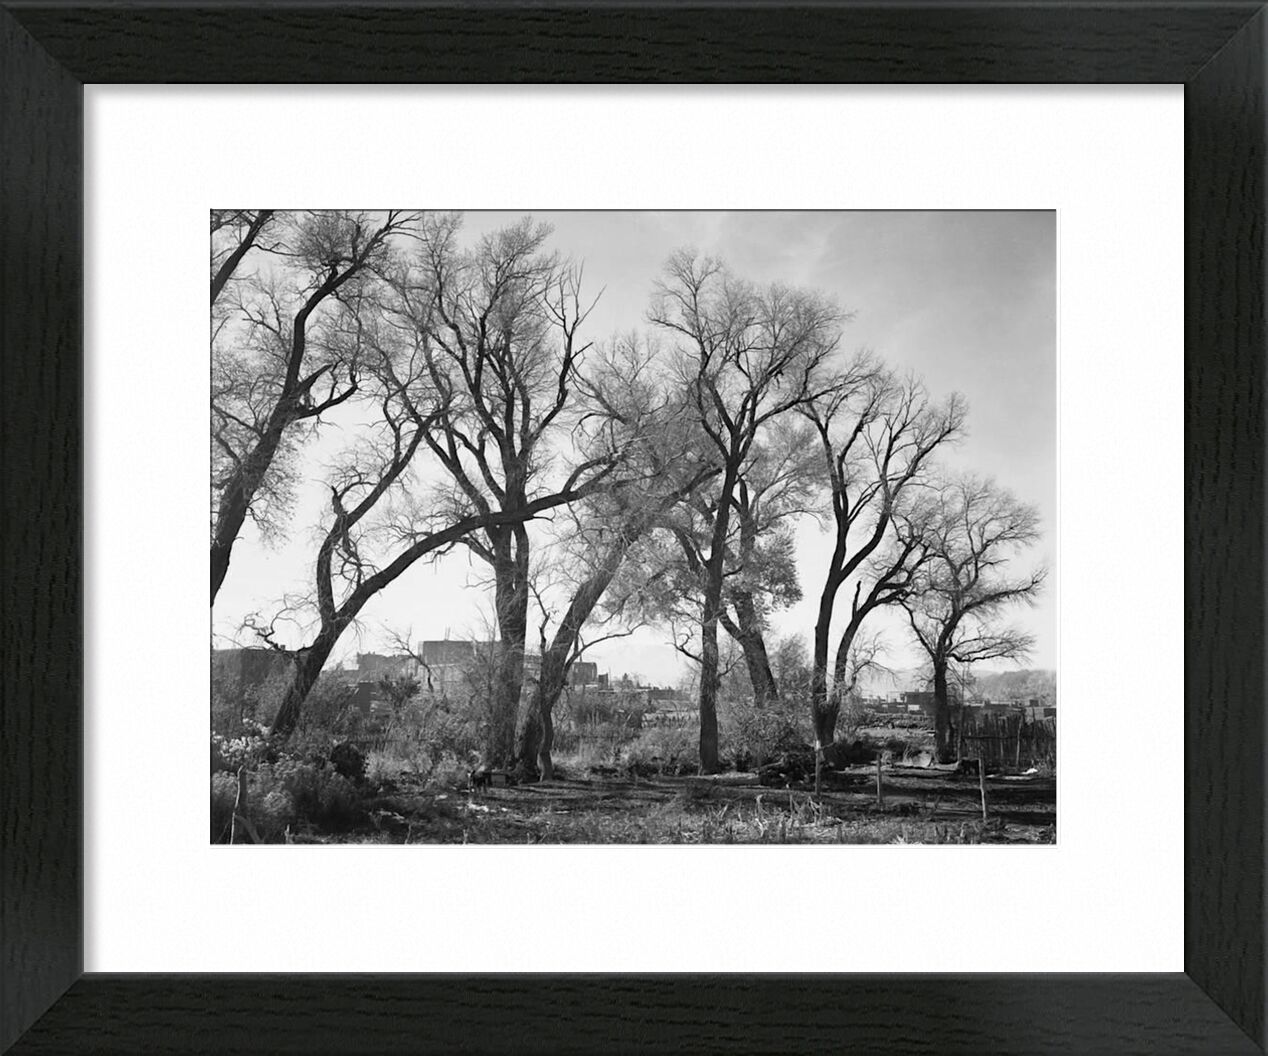 At Taos Pueblo National Historic Landmark - Ansel Adams von Bildende Kunst, Prodi Art, ANSEL ADAMS, Schwarz und weiß, Bäume, Bauernhof